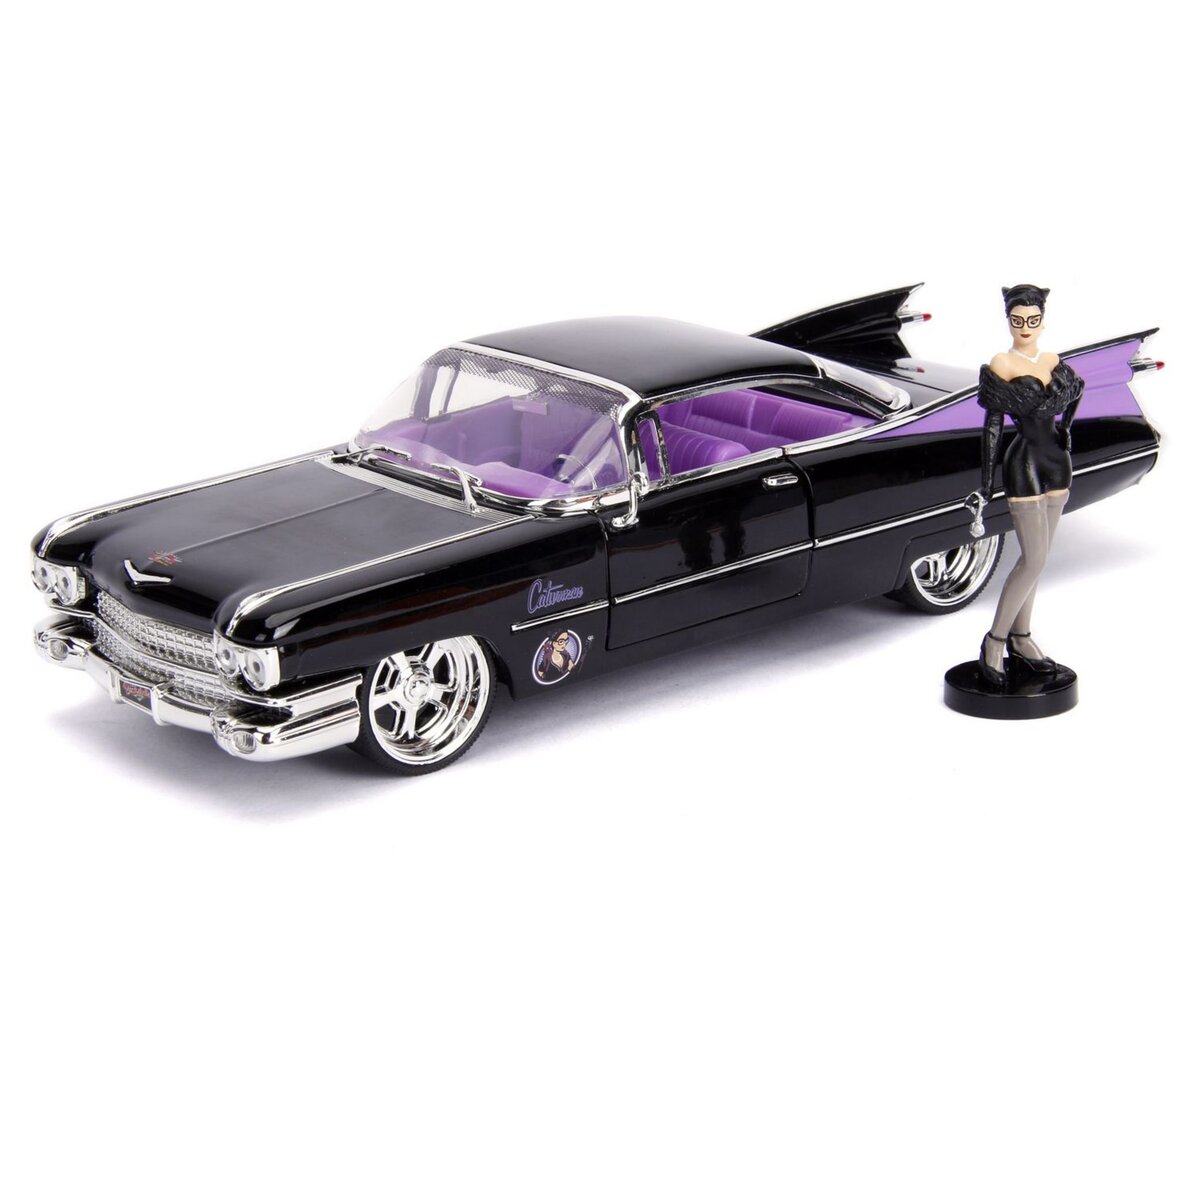 Z MODELS DISTRIBUTION Voiture miniature Cadillac 1959 + figurine Catwoman - 1/24ème